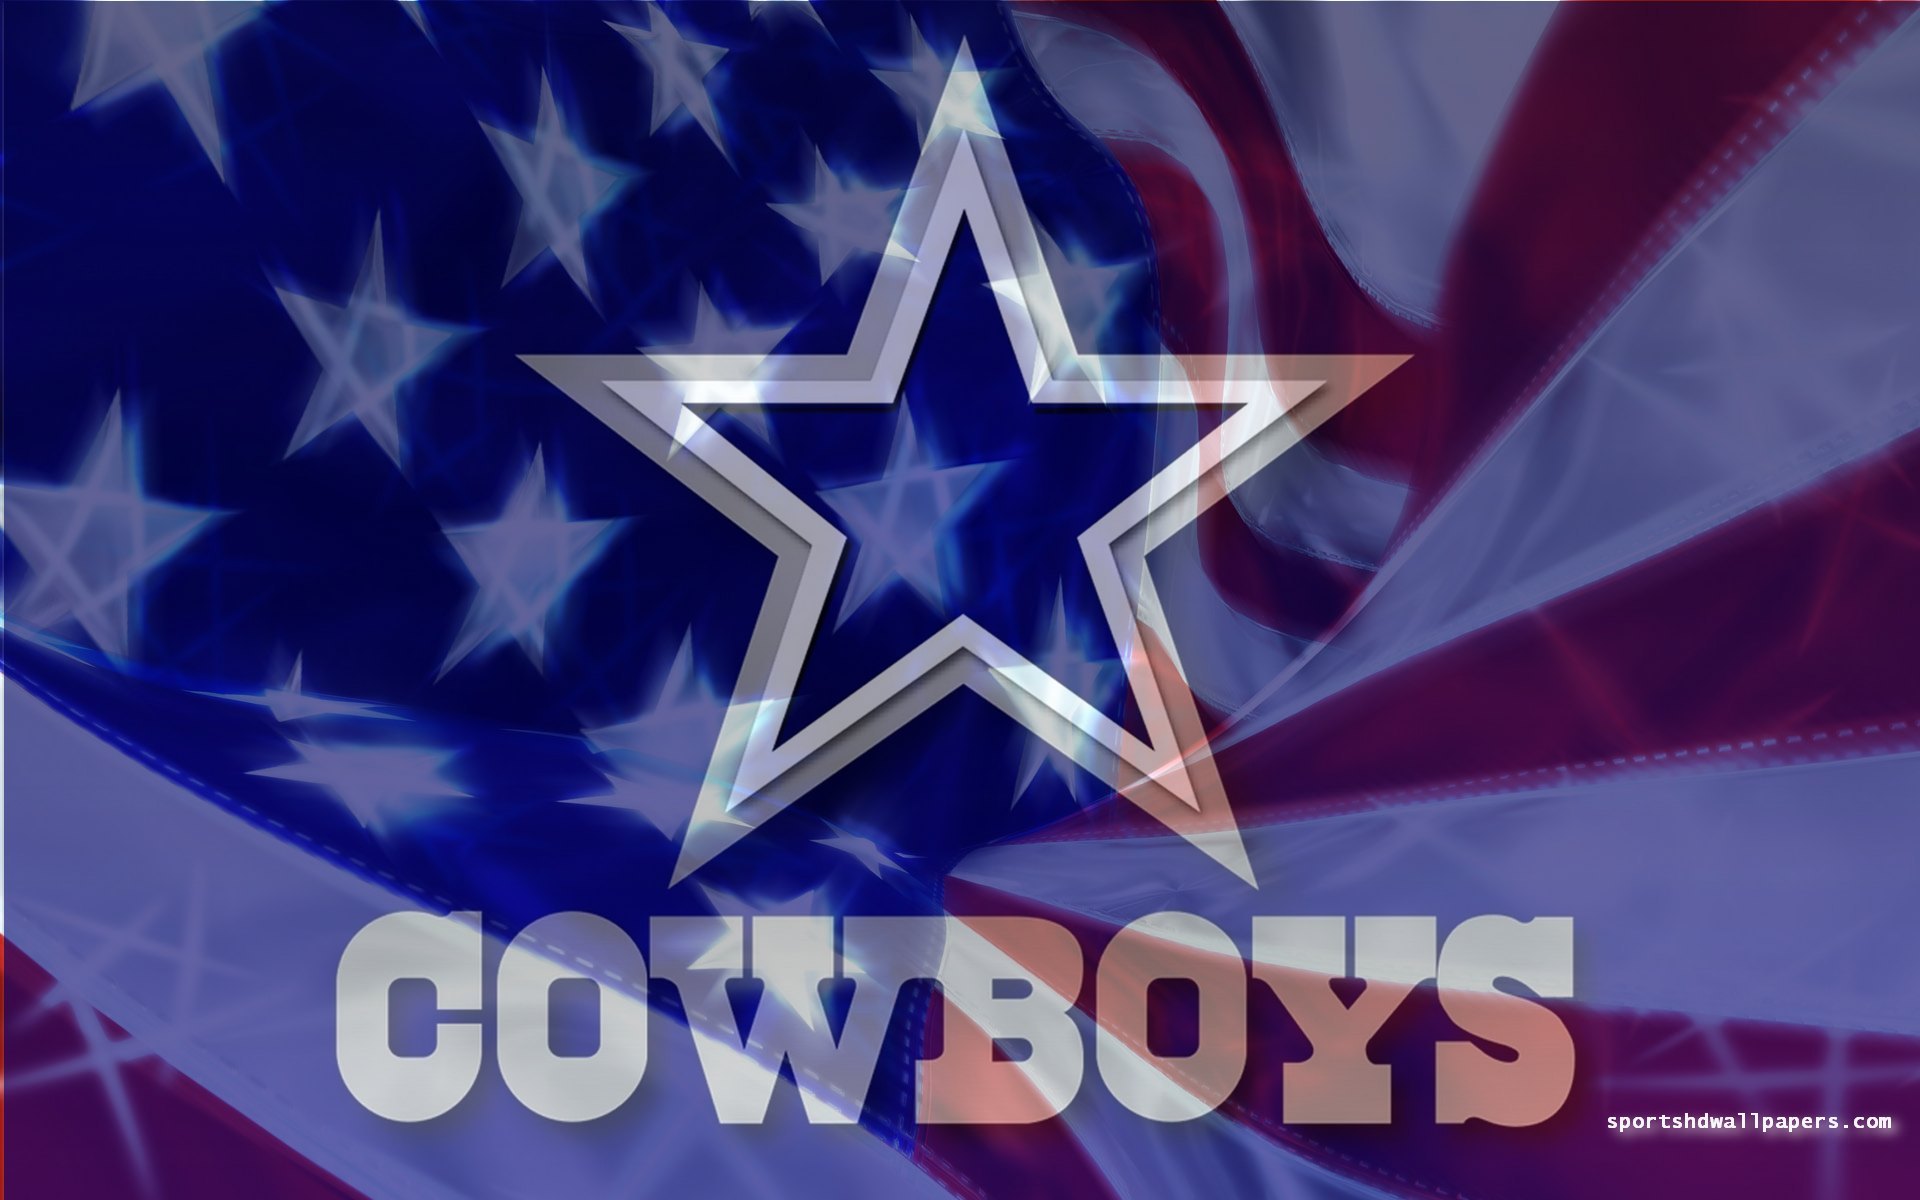 Dallas cowboy images